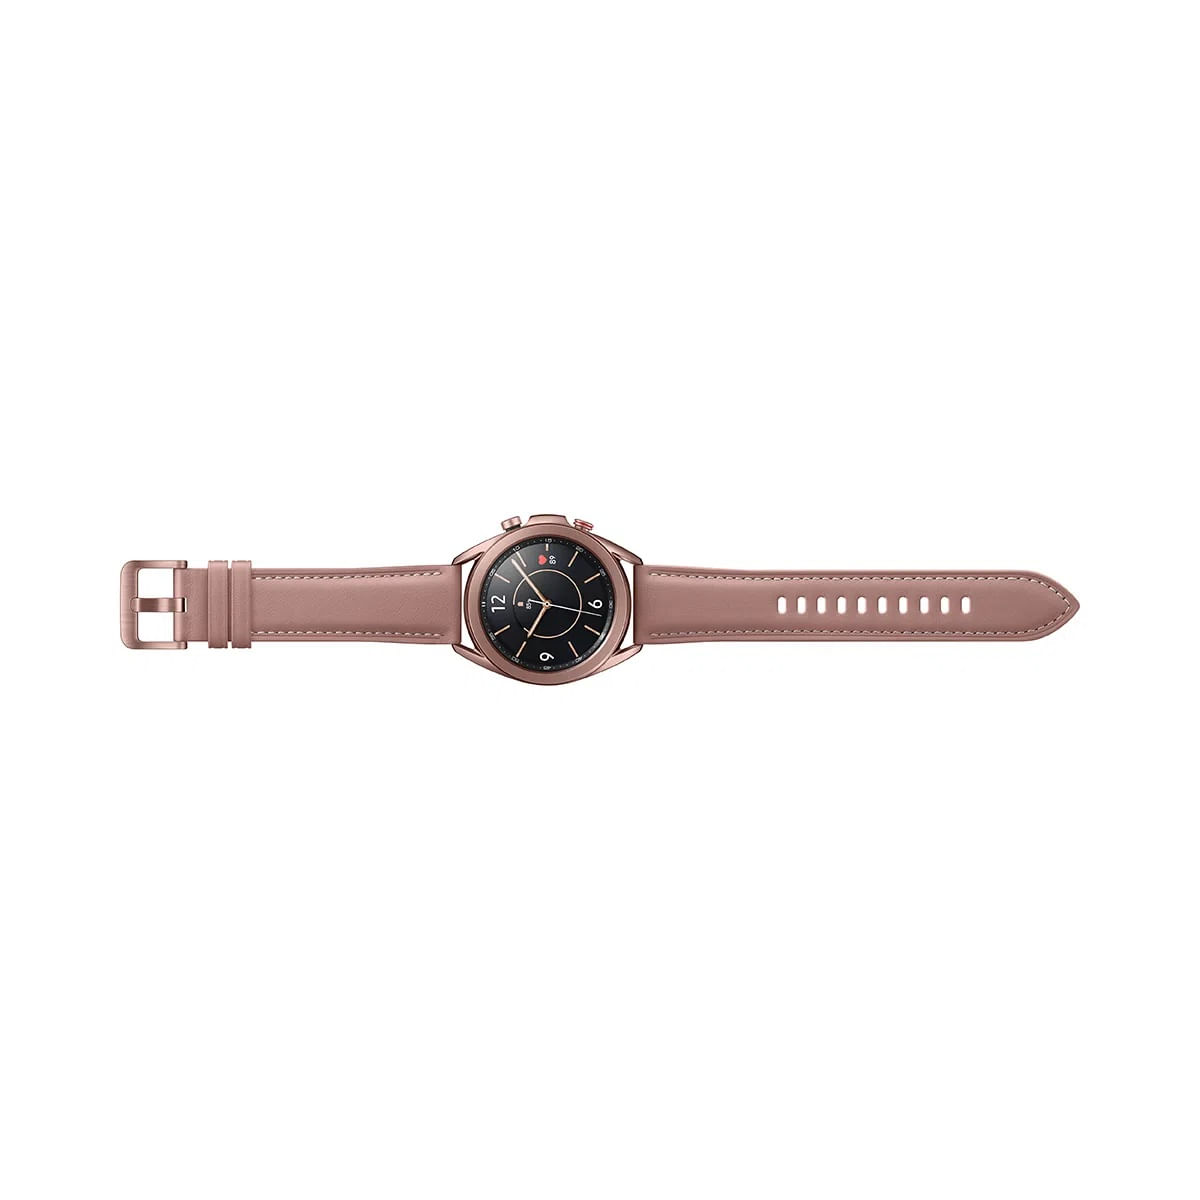 kit-smartwatch-samsung-2-pecas--galaxy-watch3-41mm-lte-bronze---galaxy-active2-lte-44mm-preto-12.jpg